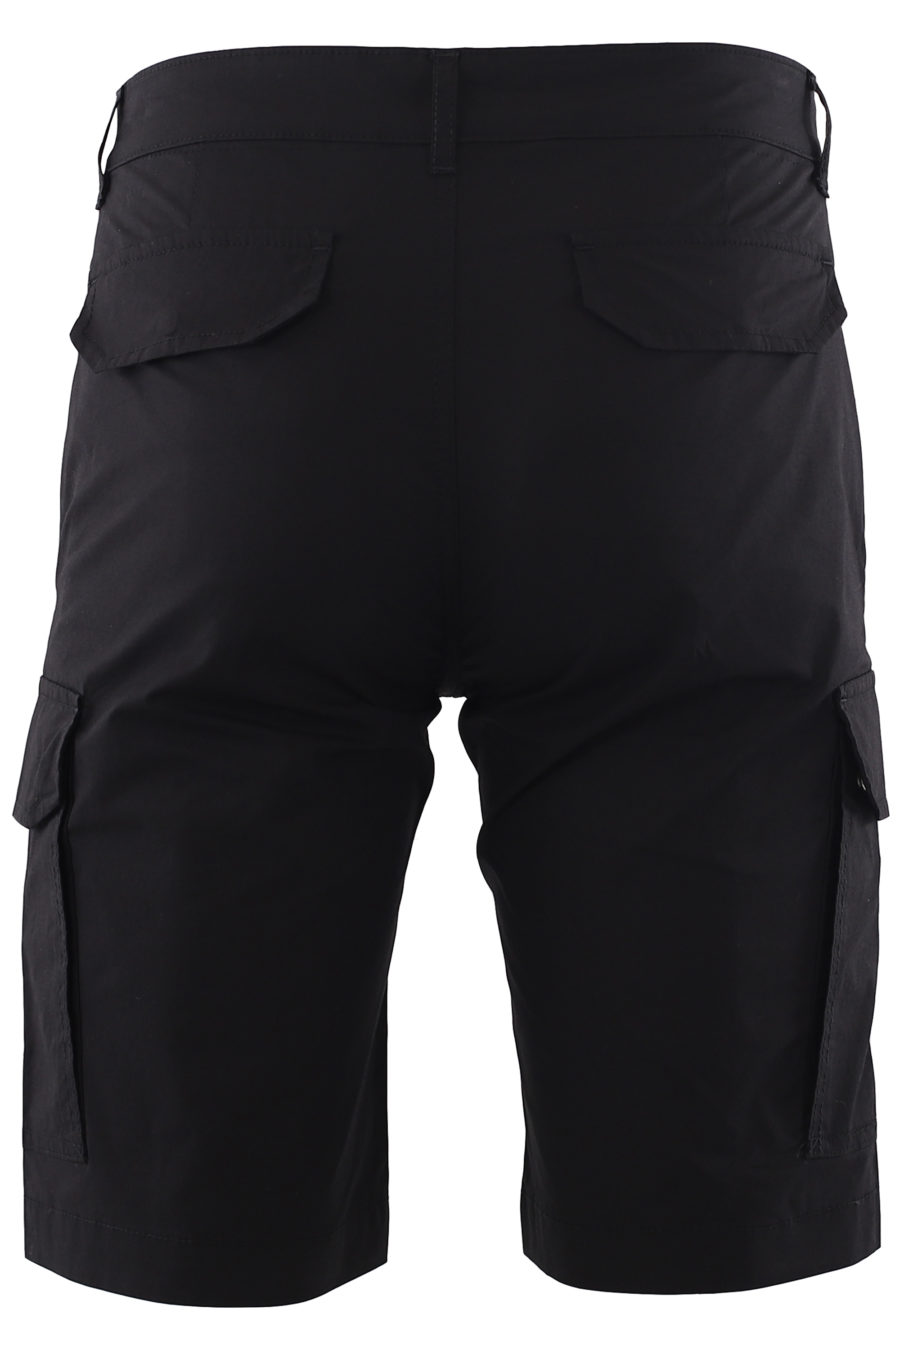 Black cargo shorts - IMG 6646